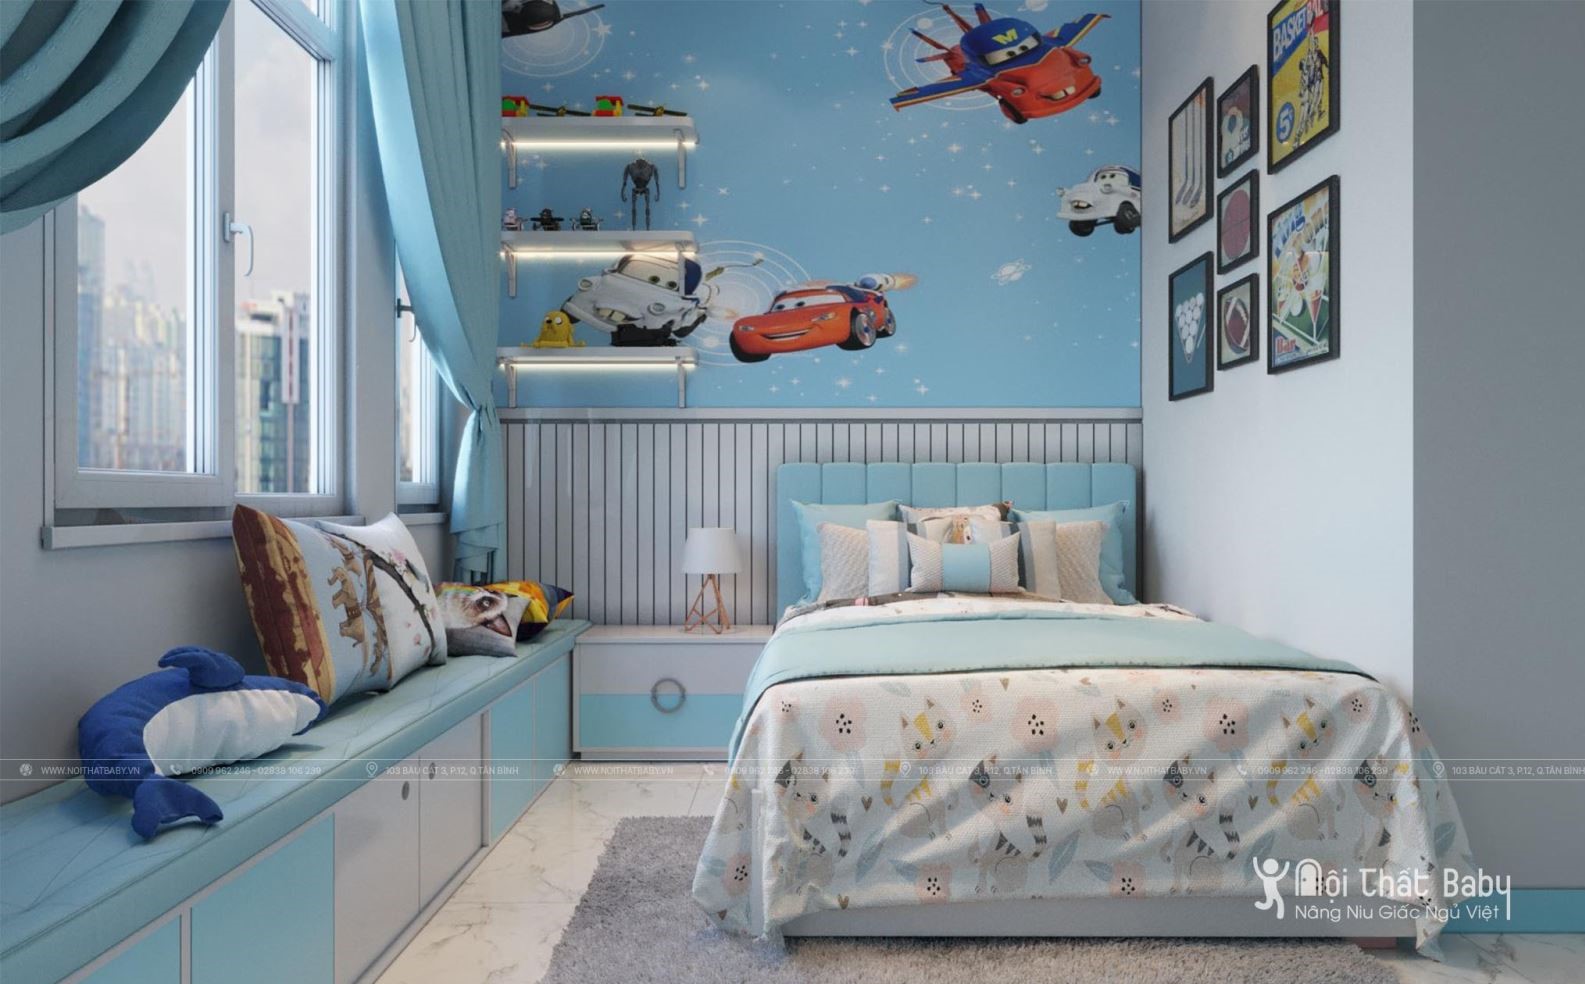 Những mẫu thiết kế phòng ngủ bé trai đẹp nhất năm 2020